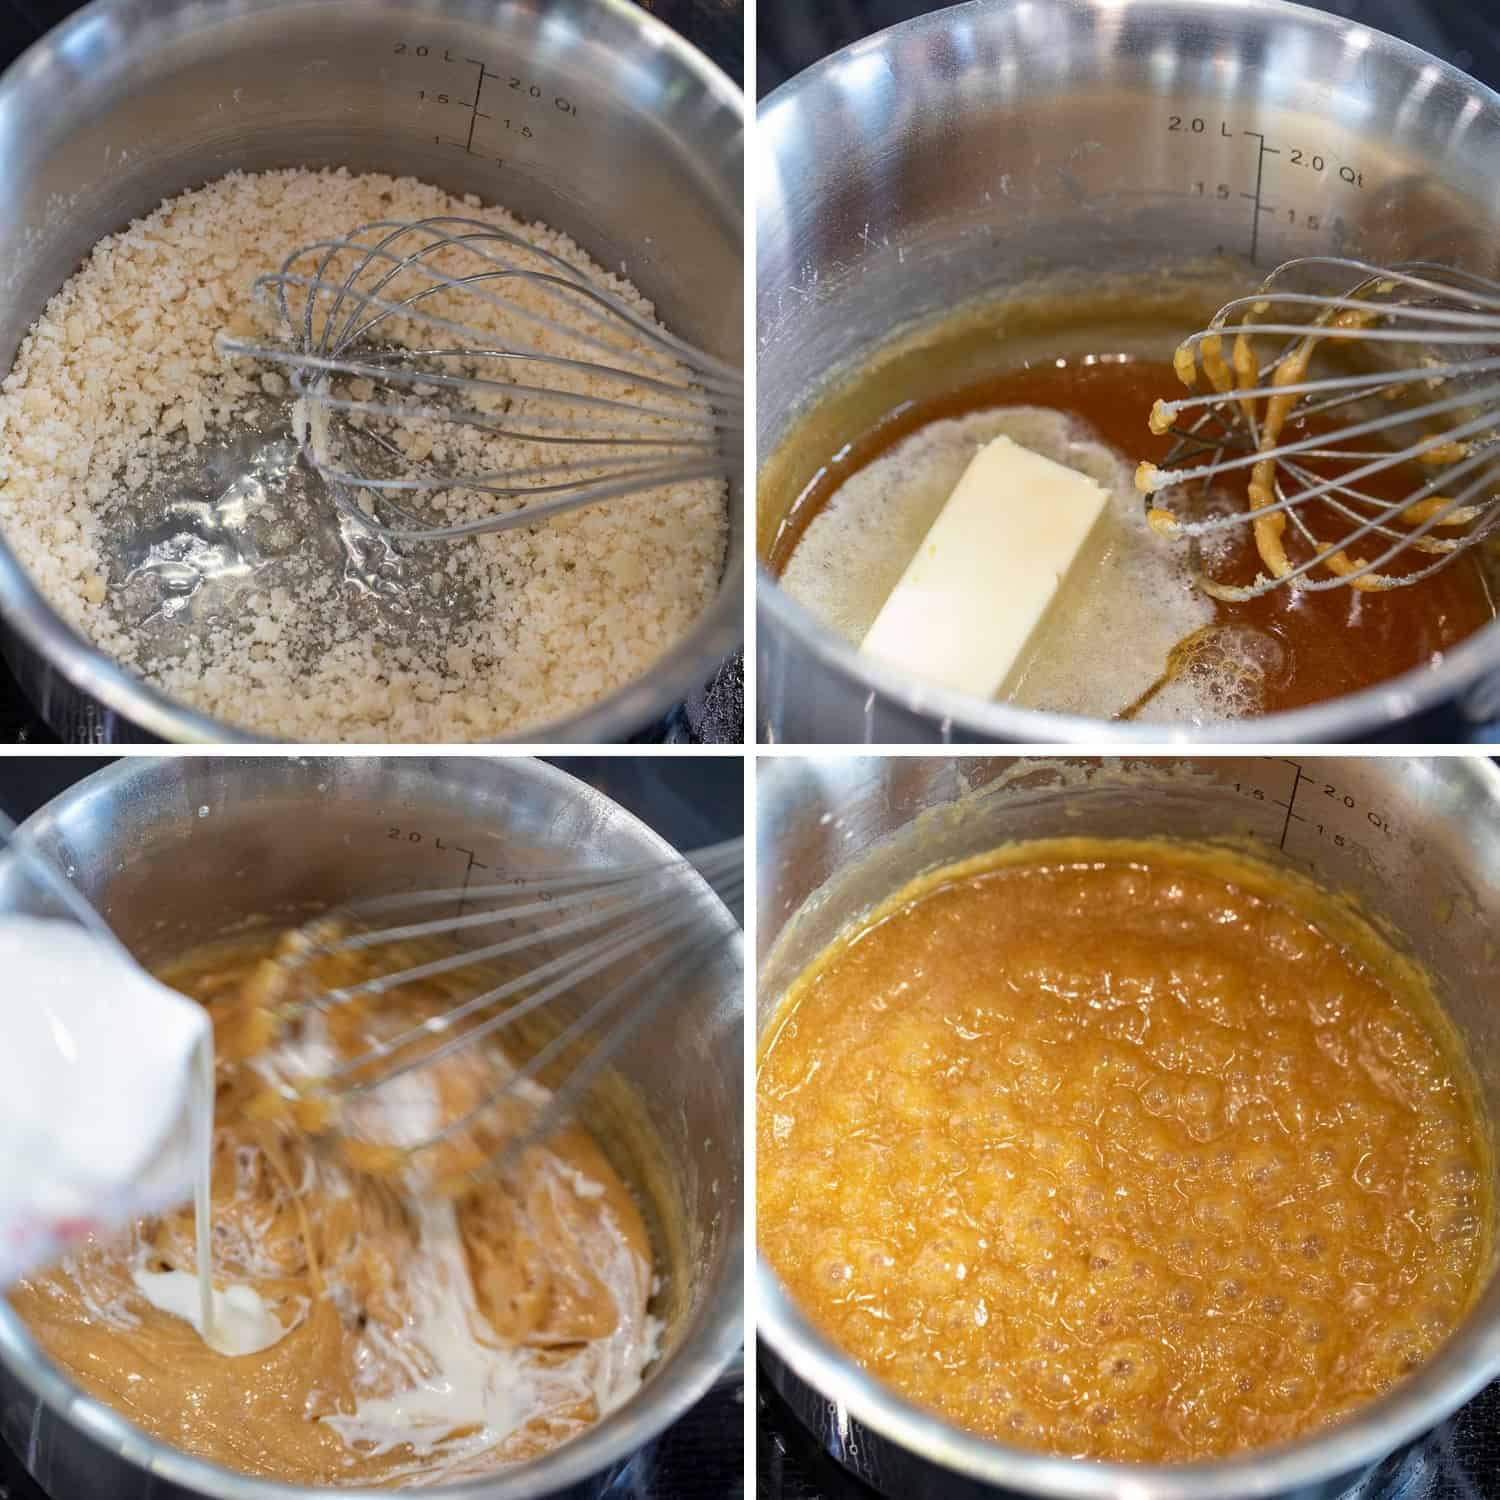 Cooking caramel sauce